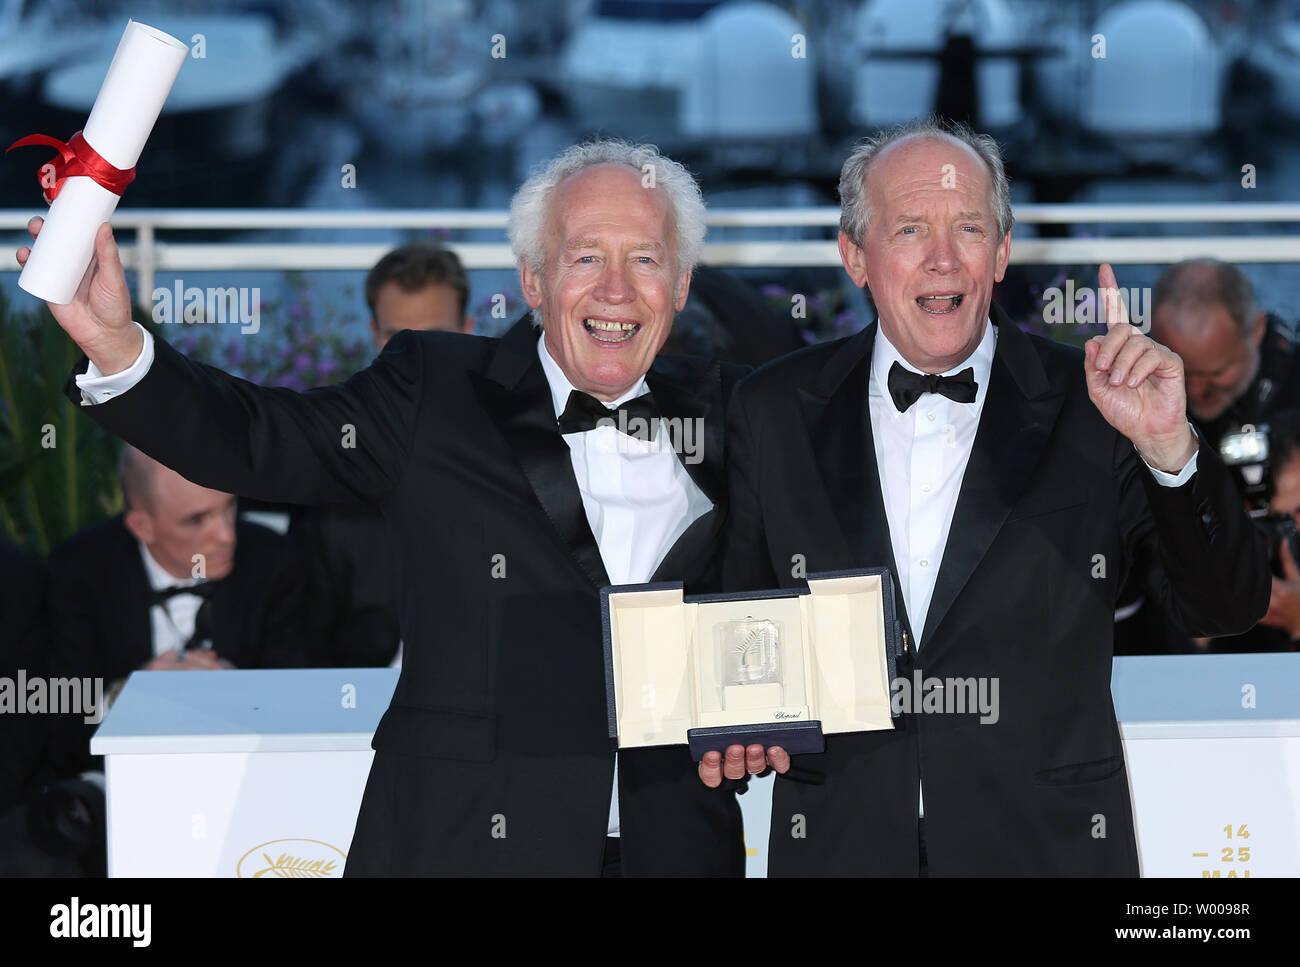 Jean-Pierre Dardenne (L) et Luc Dardenne arrivent à l'award photocall après avoir reçu le "Meilleur Directeur' award pour le film 'Ahmed' au cours de la 20e Congrès International du Film de Cannes à Cannes, France le 25 mai 2019. Photo de David Silpa/UPI Banque D'Images